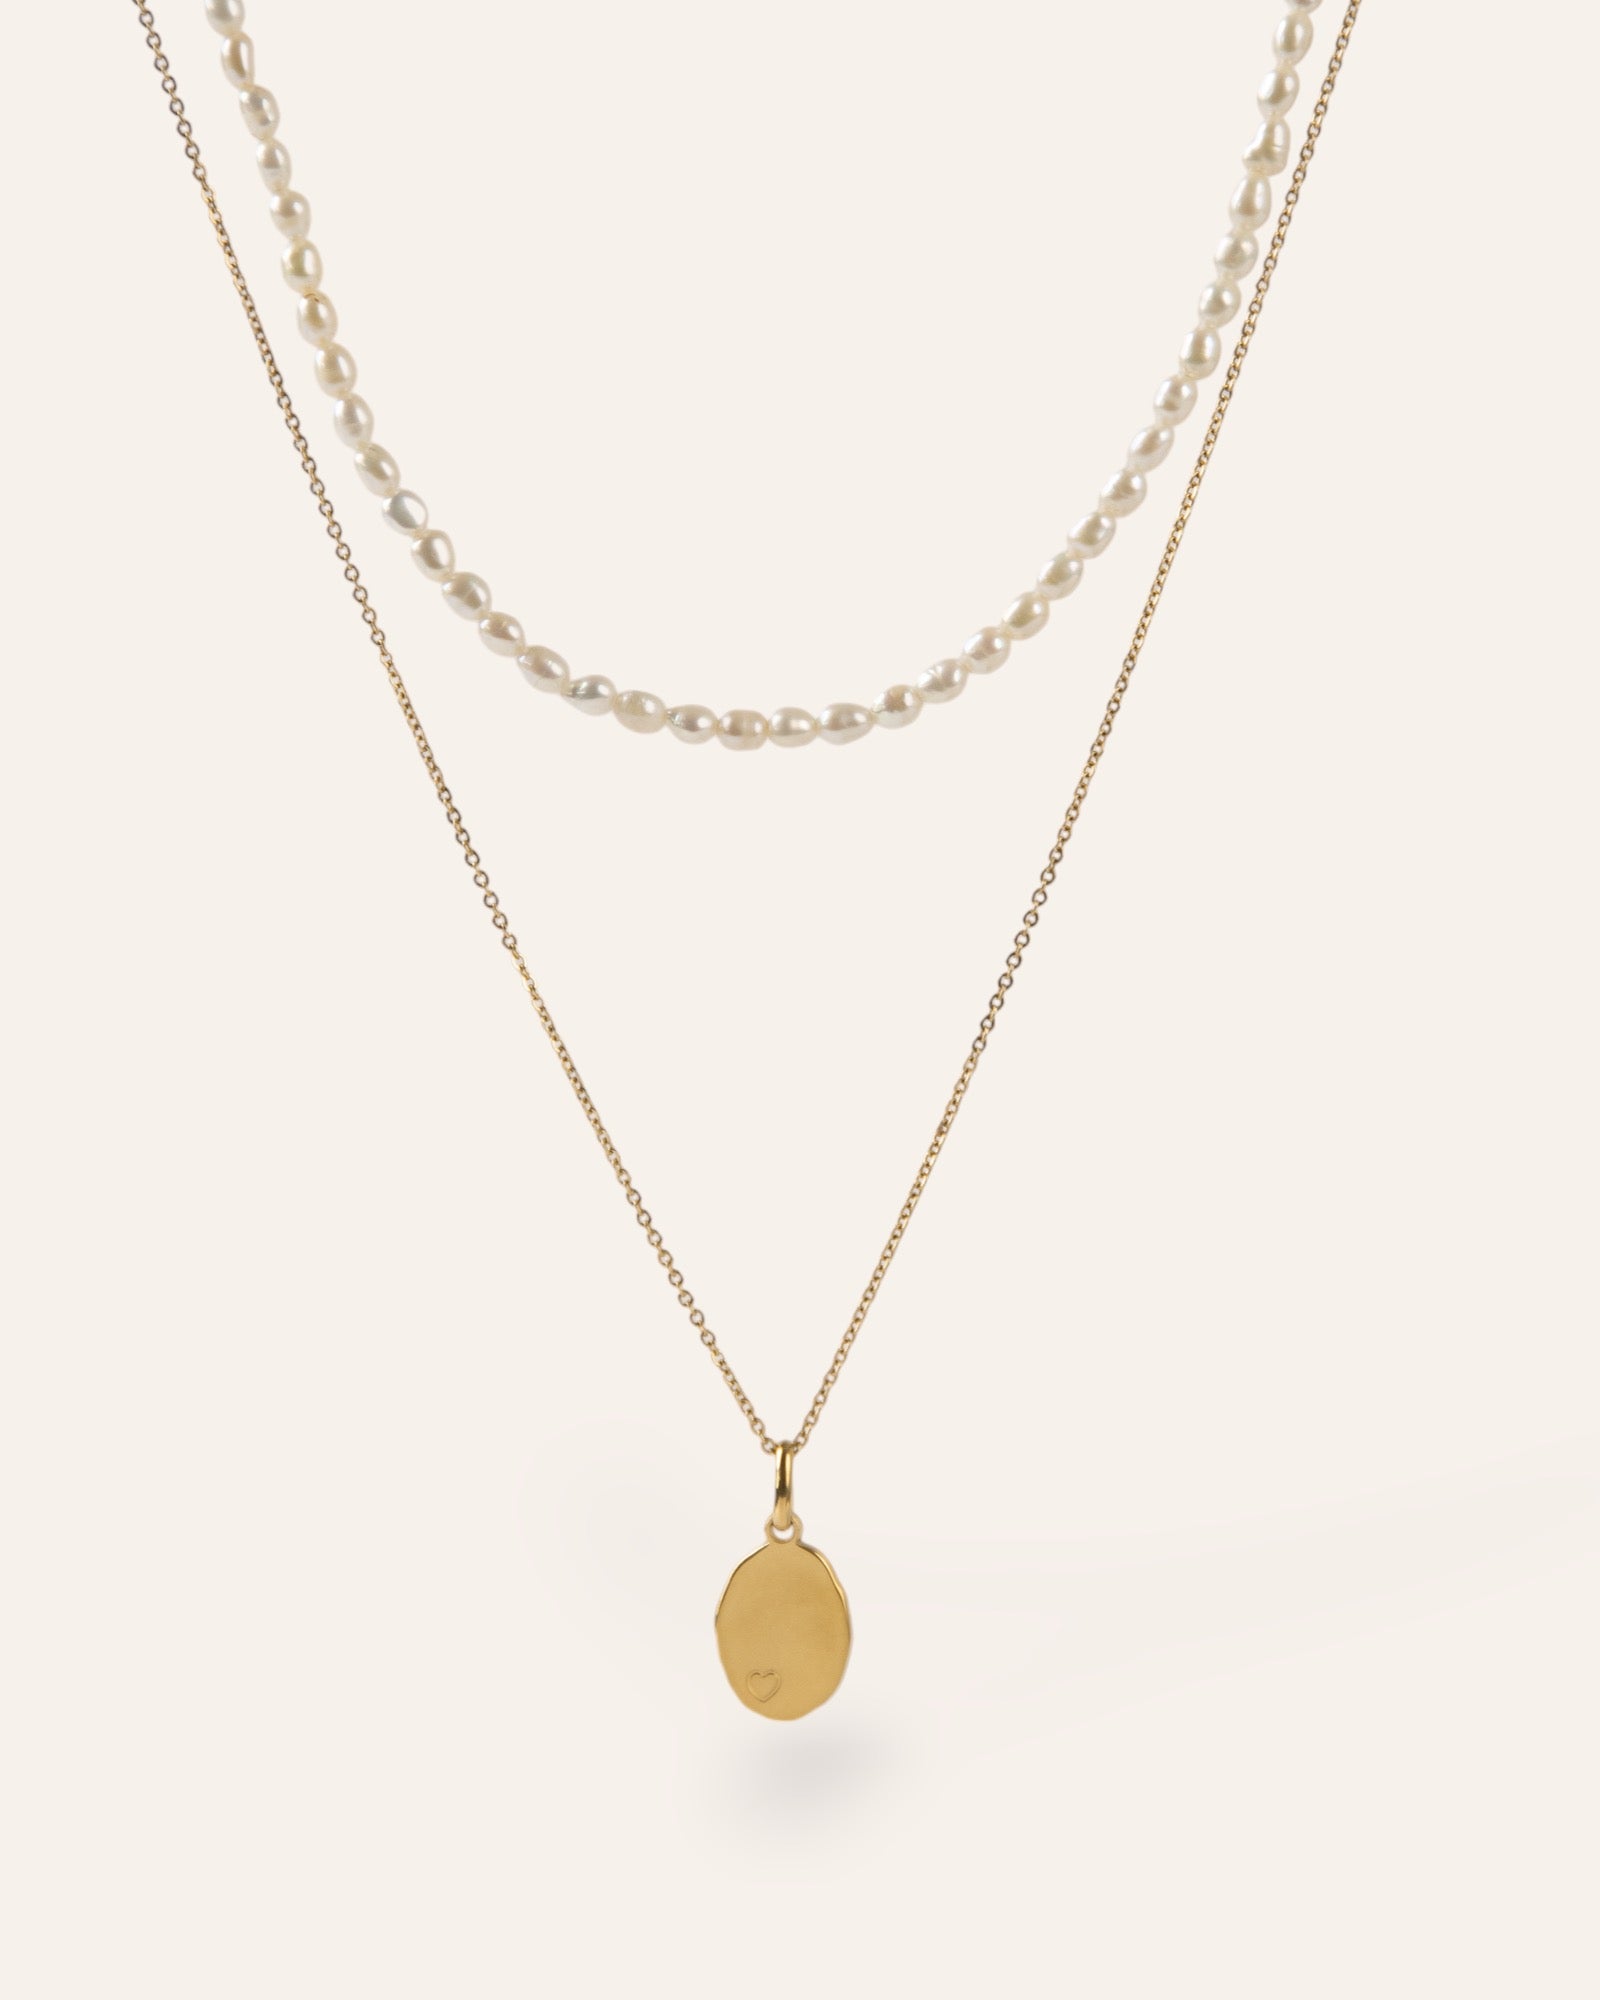 Composition de deux colliers, avec un collier orné de petites perles de culture, et d'un collier en chaîne forçat accompagné d'une médaille de forme ovale avec des contours irréguliers un motif en petit cœur, en plaqué or 18 carats made in France.